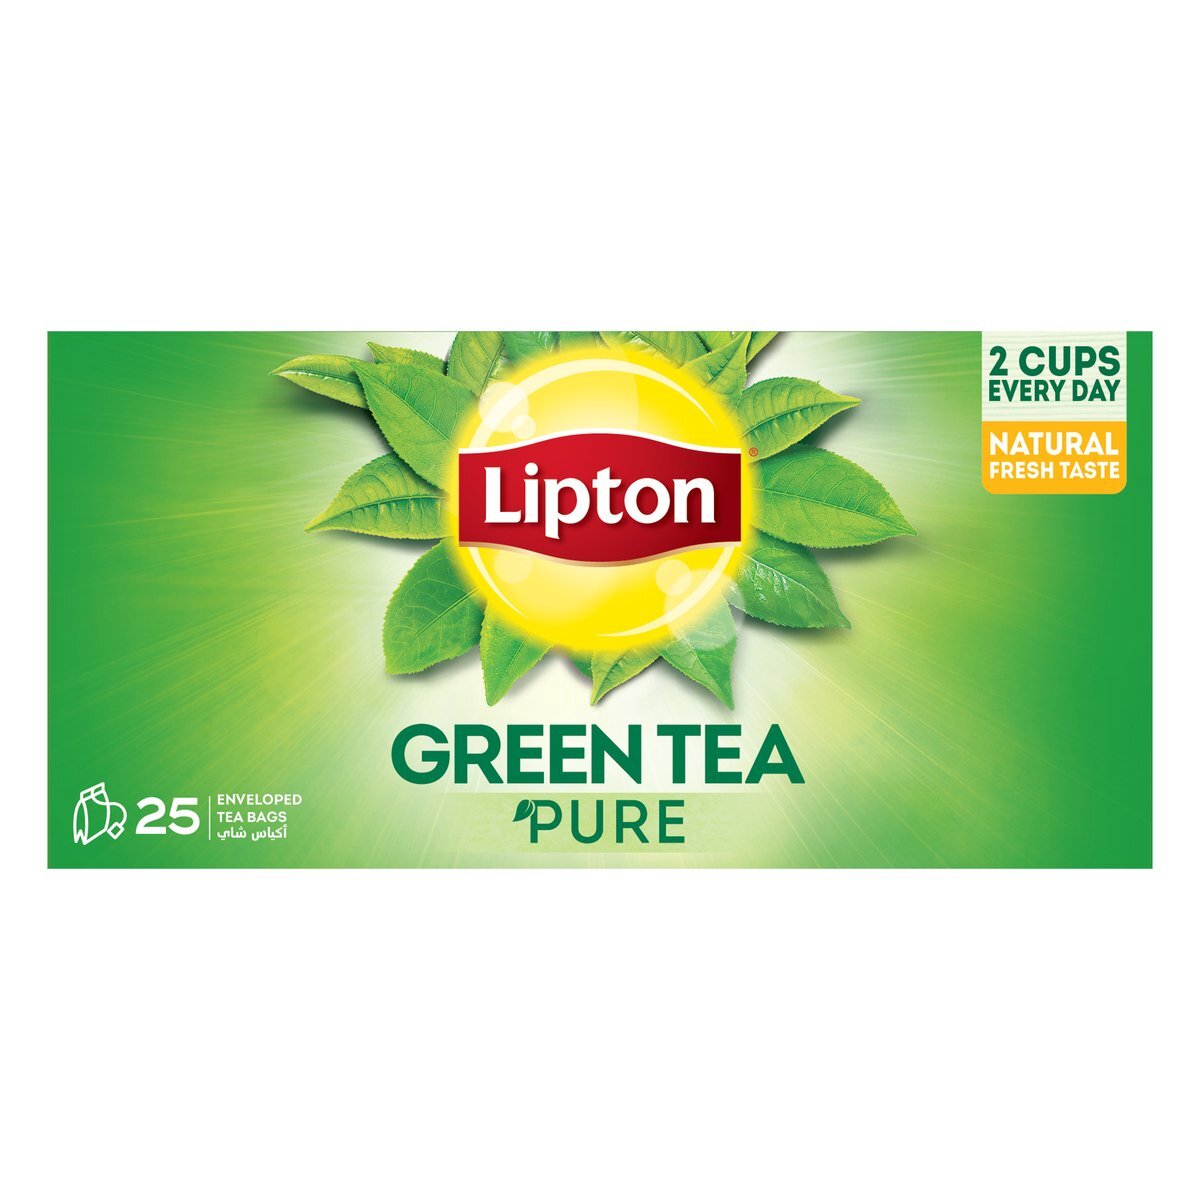 Buy Lipton Pure Green Tea Value Pack 25 Teabags Online at Best Price | Big Discount | Lulu UAE in UAE